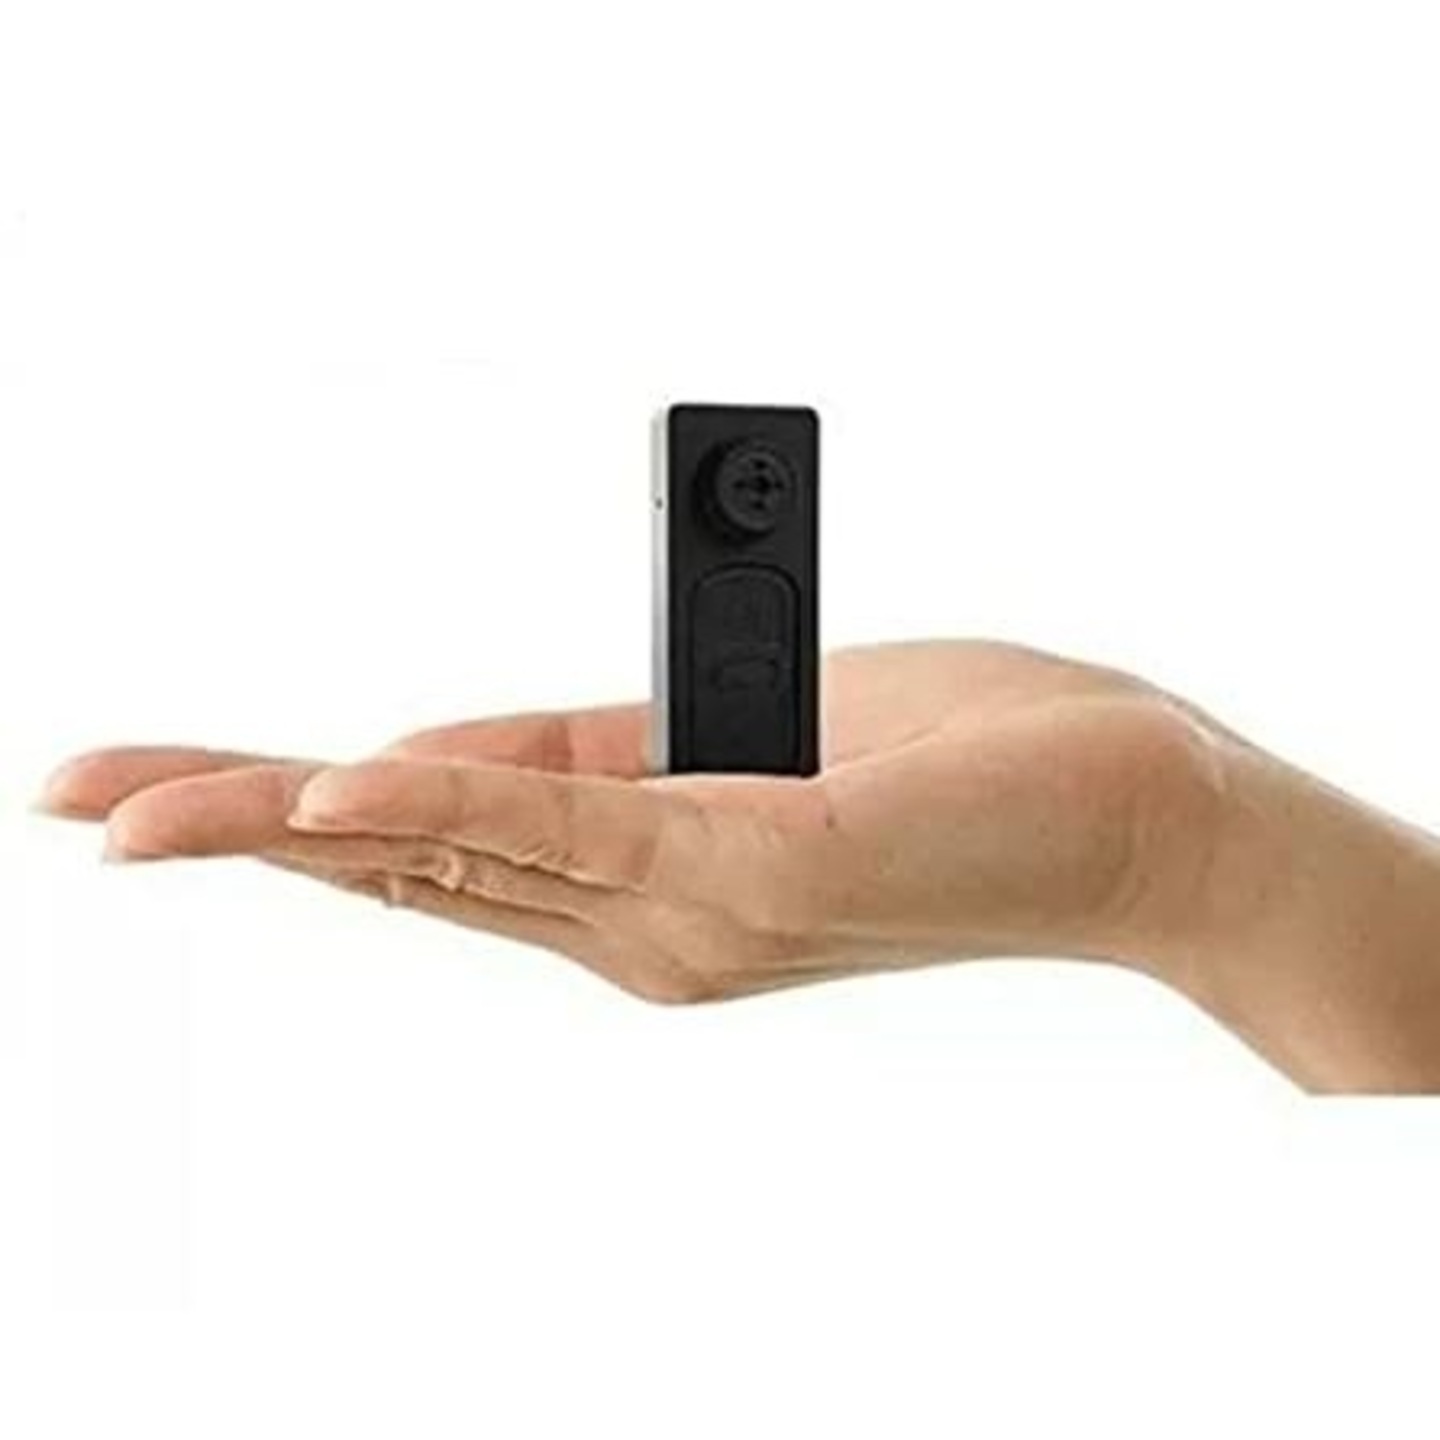 Mini Button Spy Camera / Audio and Video Recorder